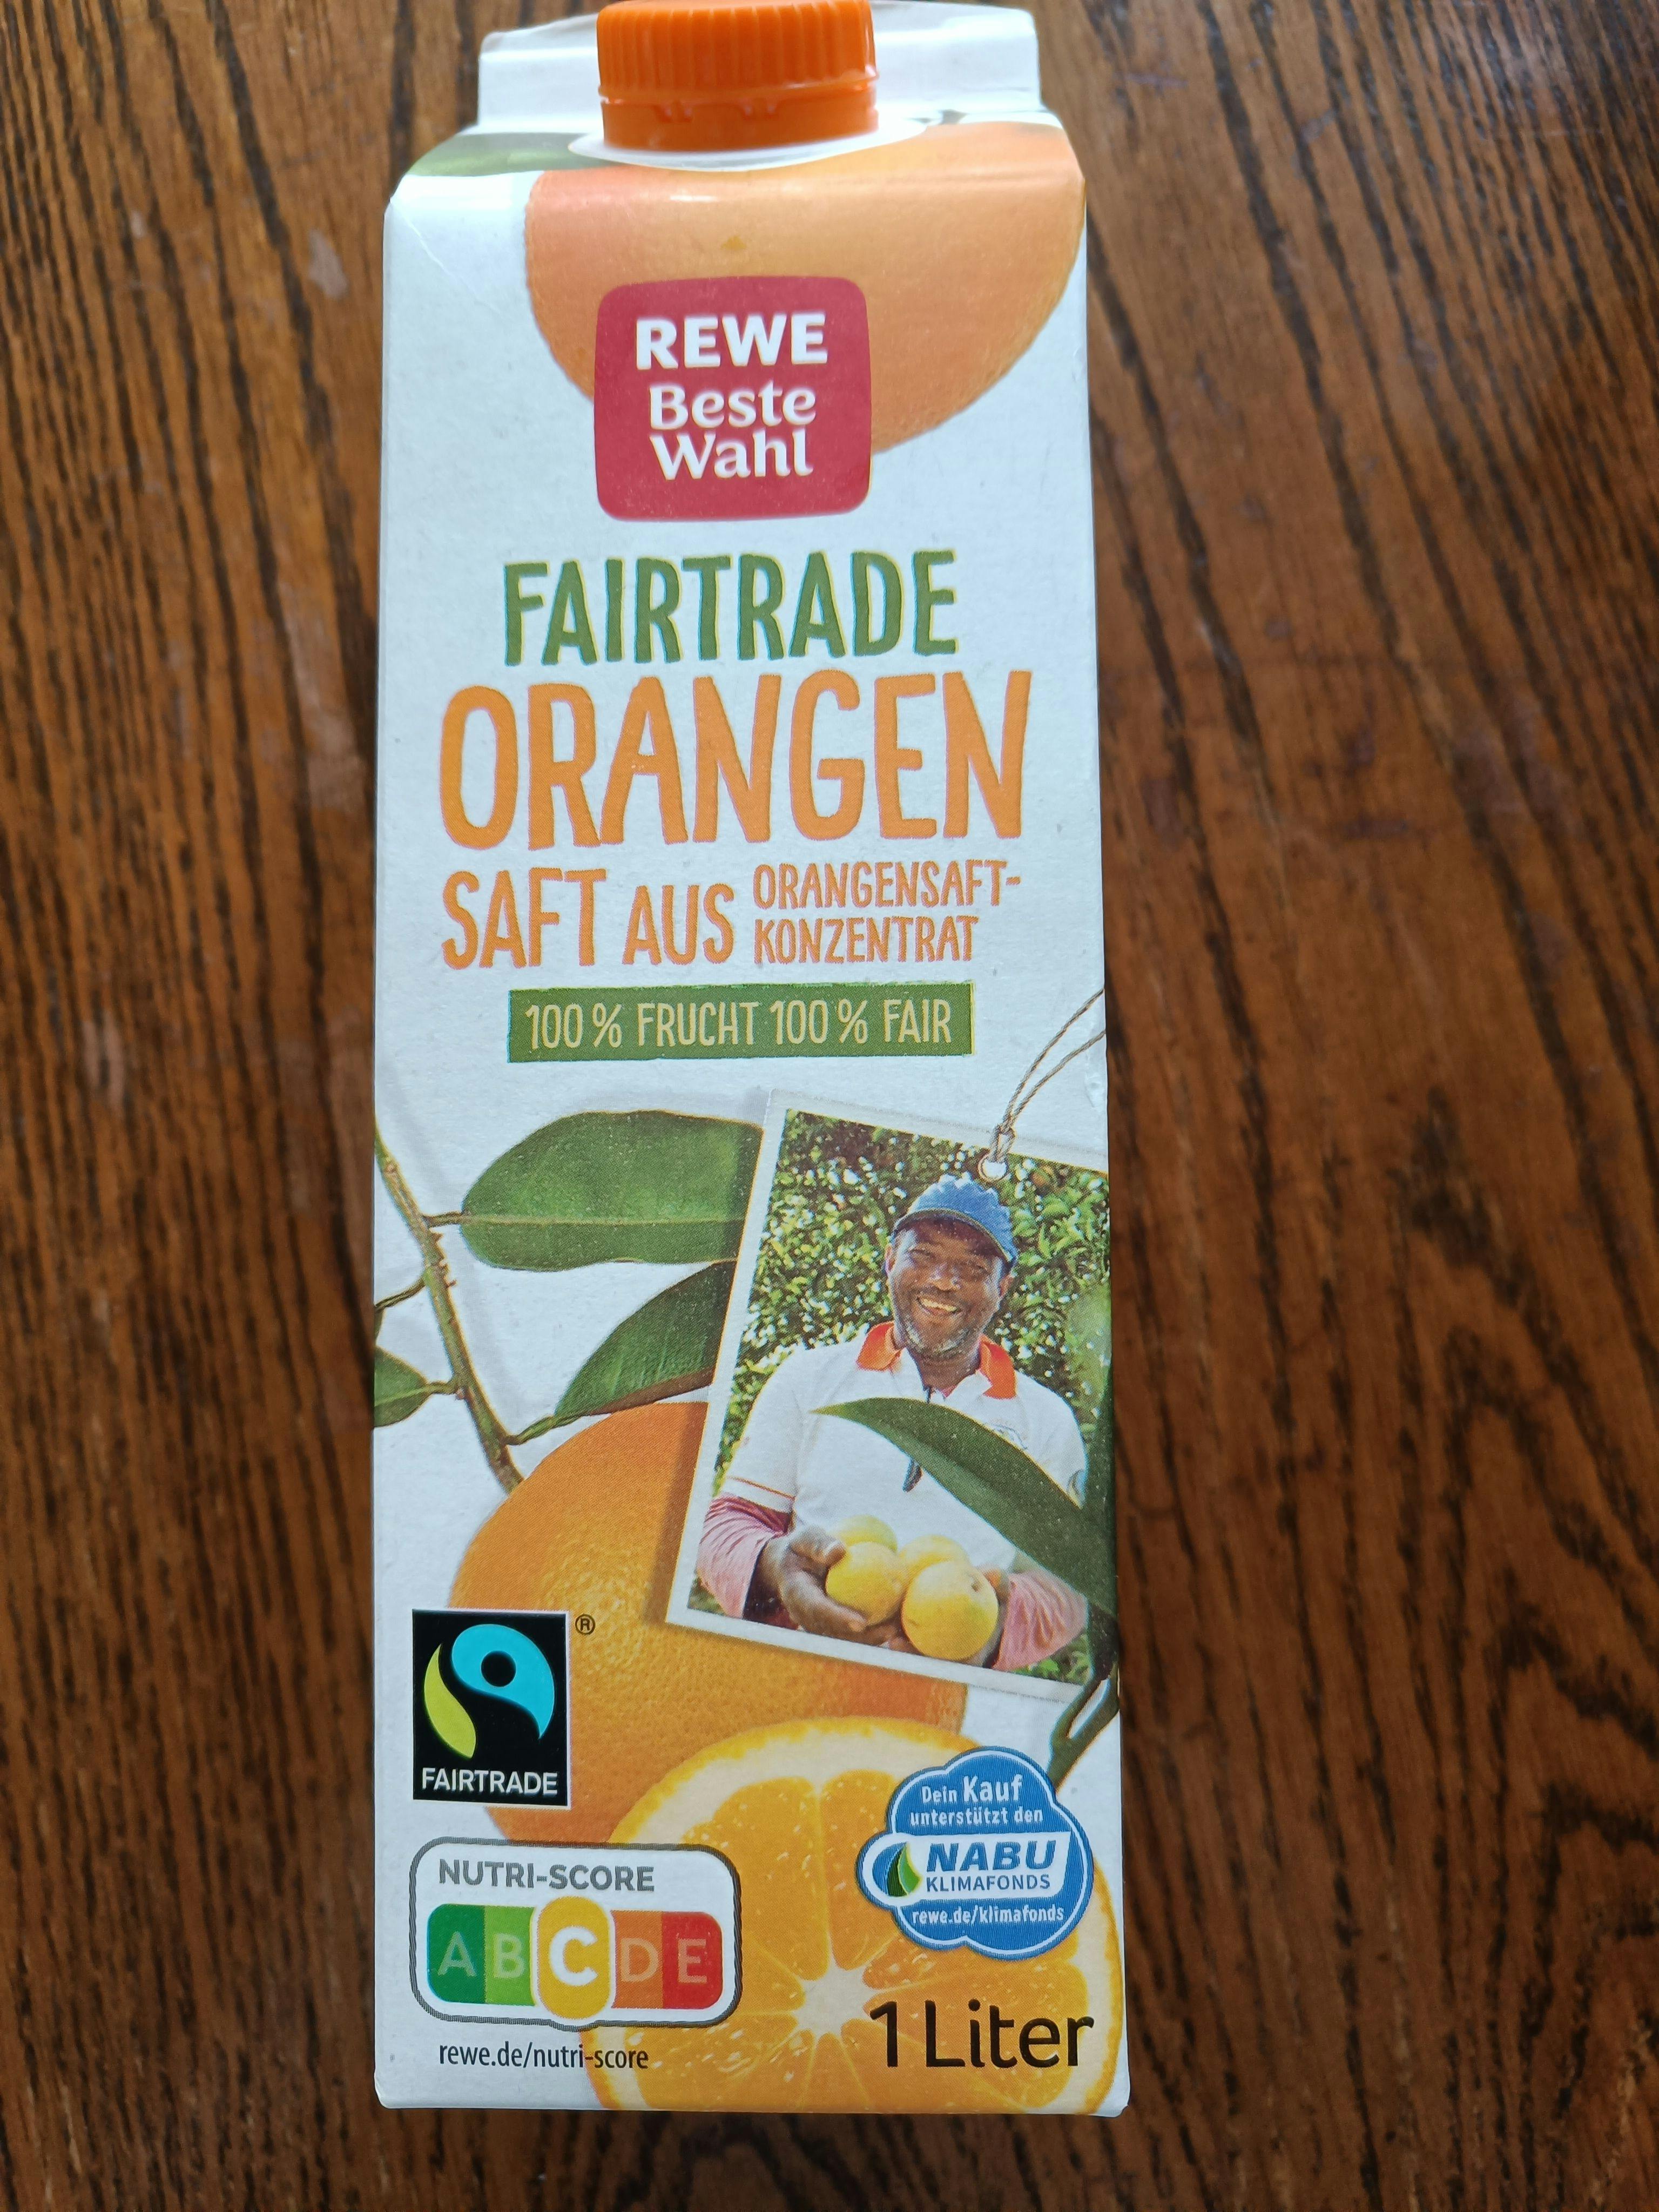 Fairer Orangensaft